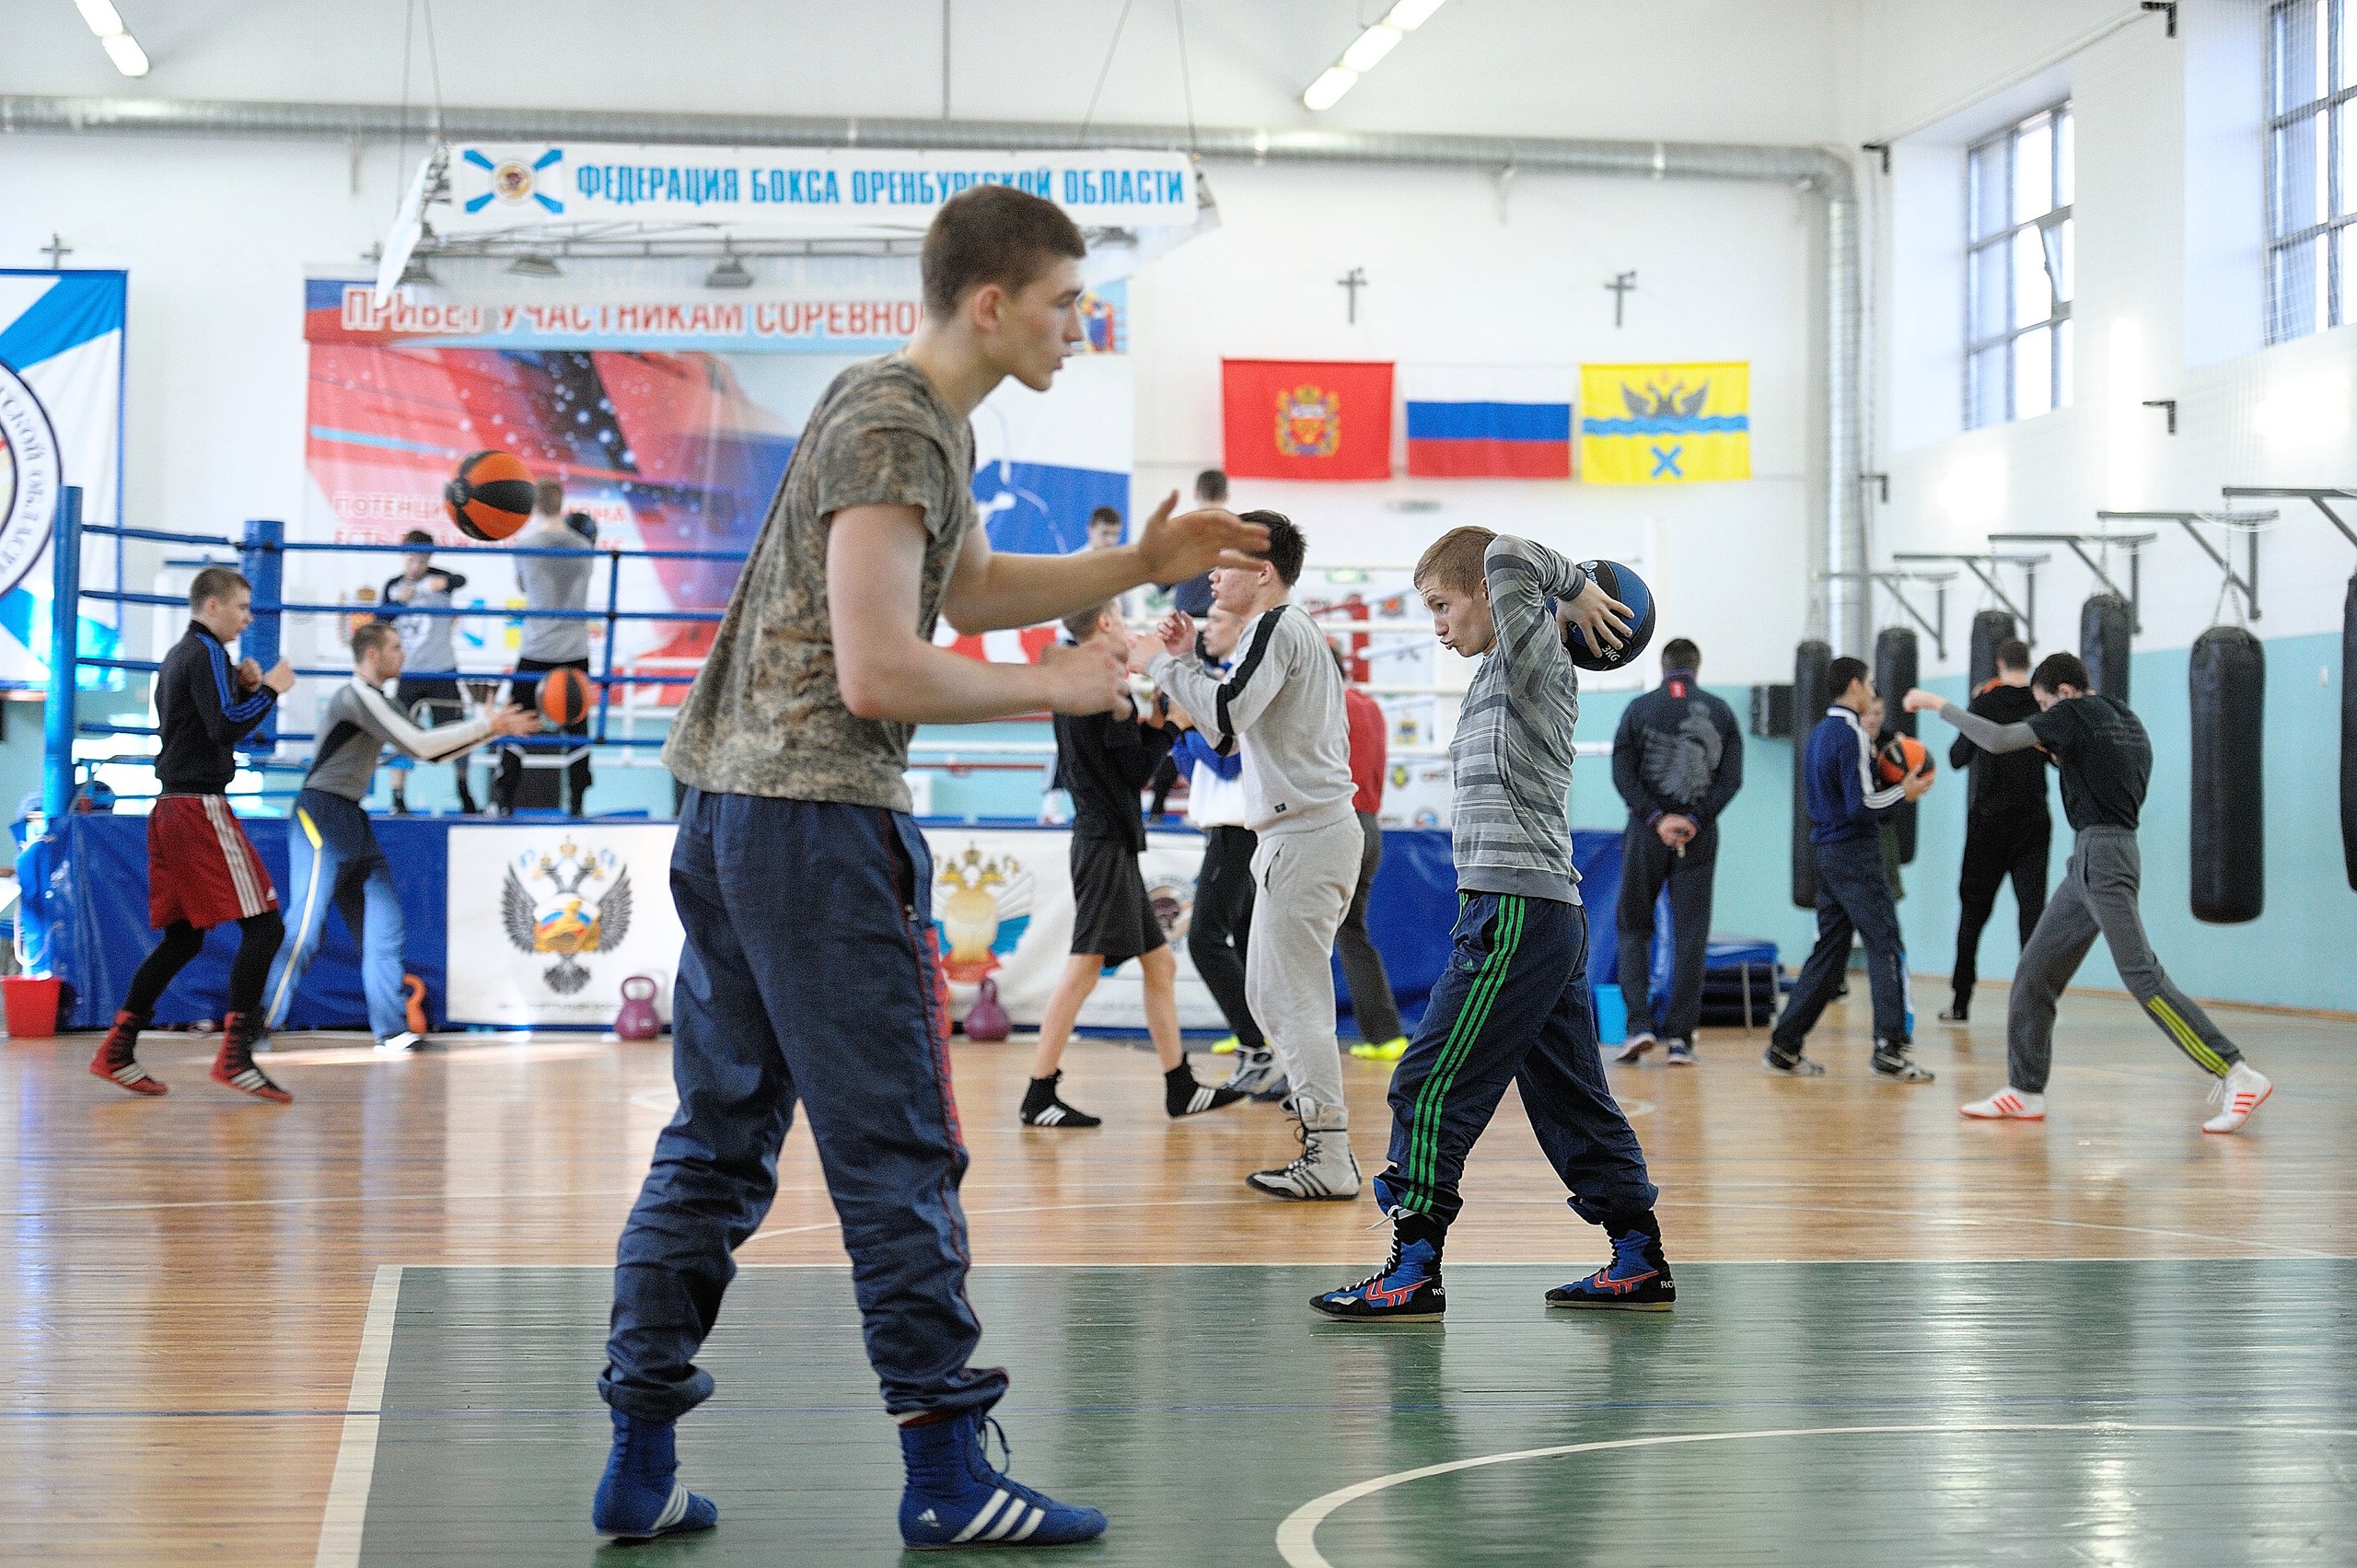 Оренбург готовится принять Первенство России по боксу среди юниоров